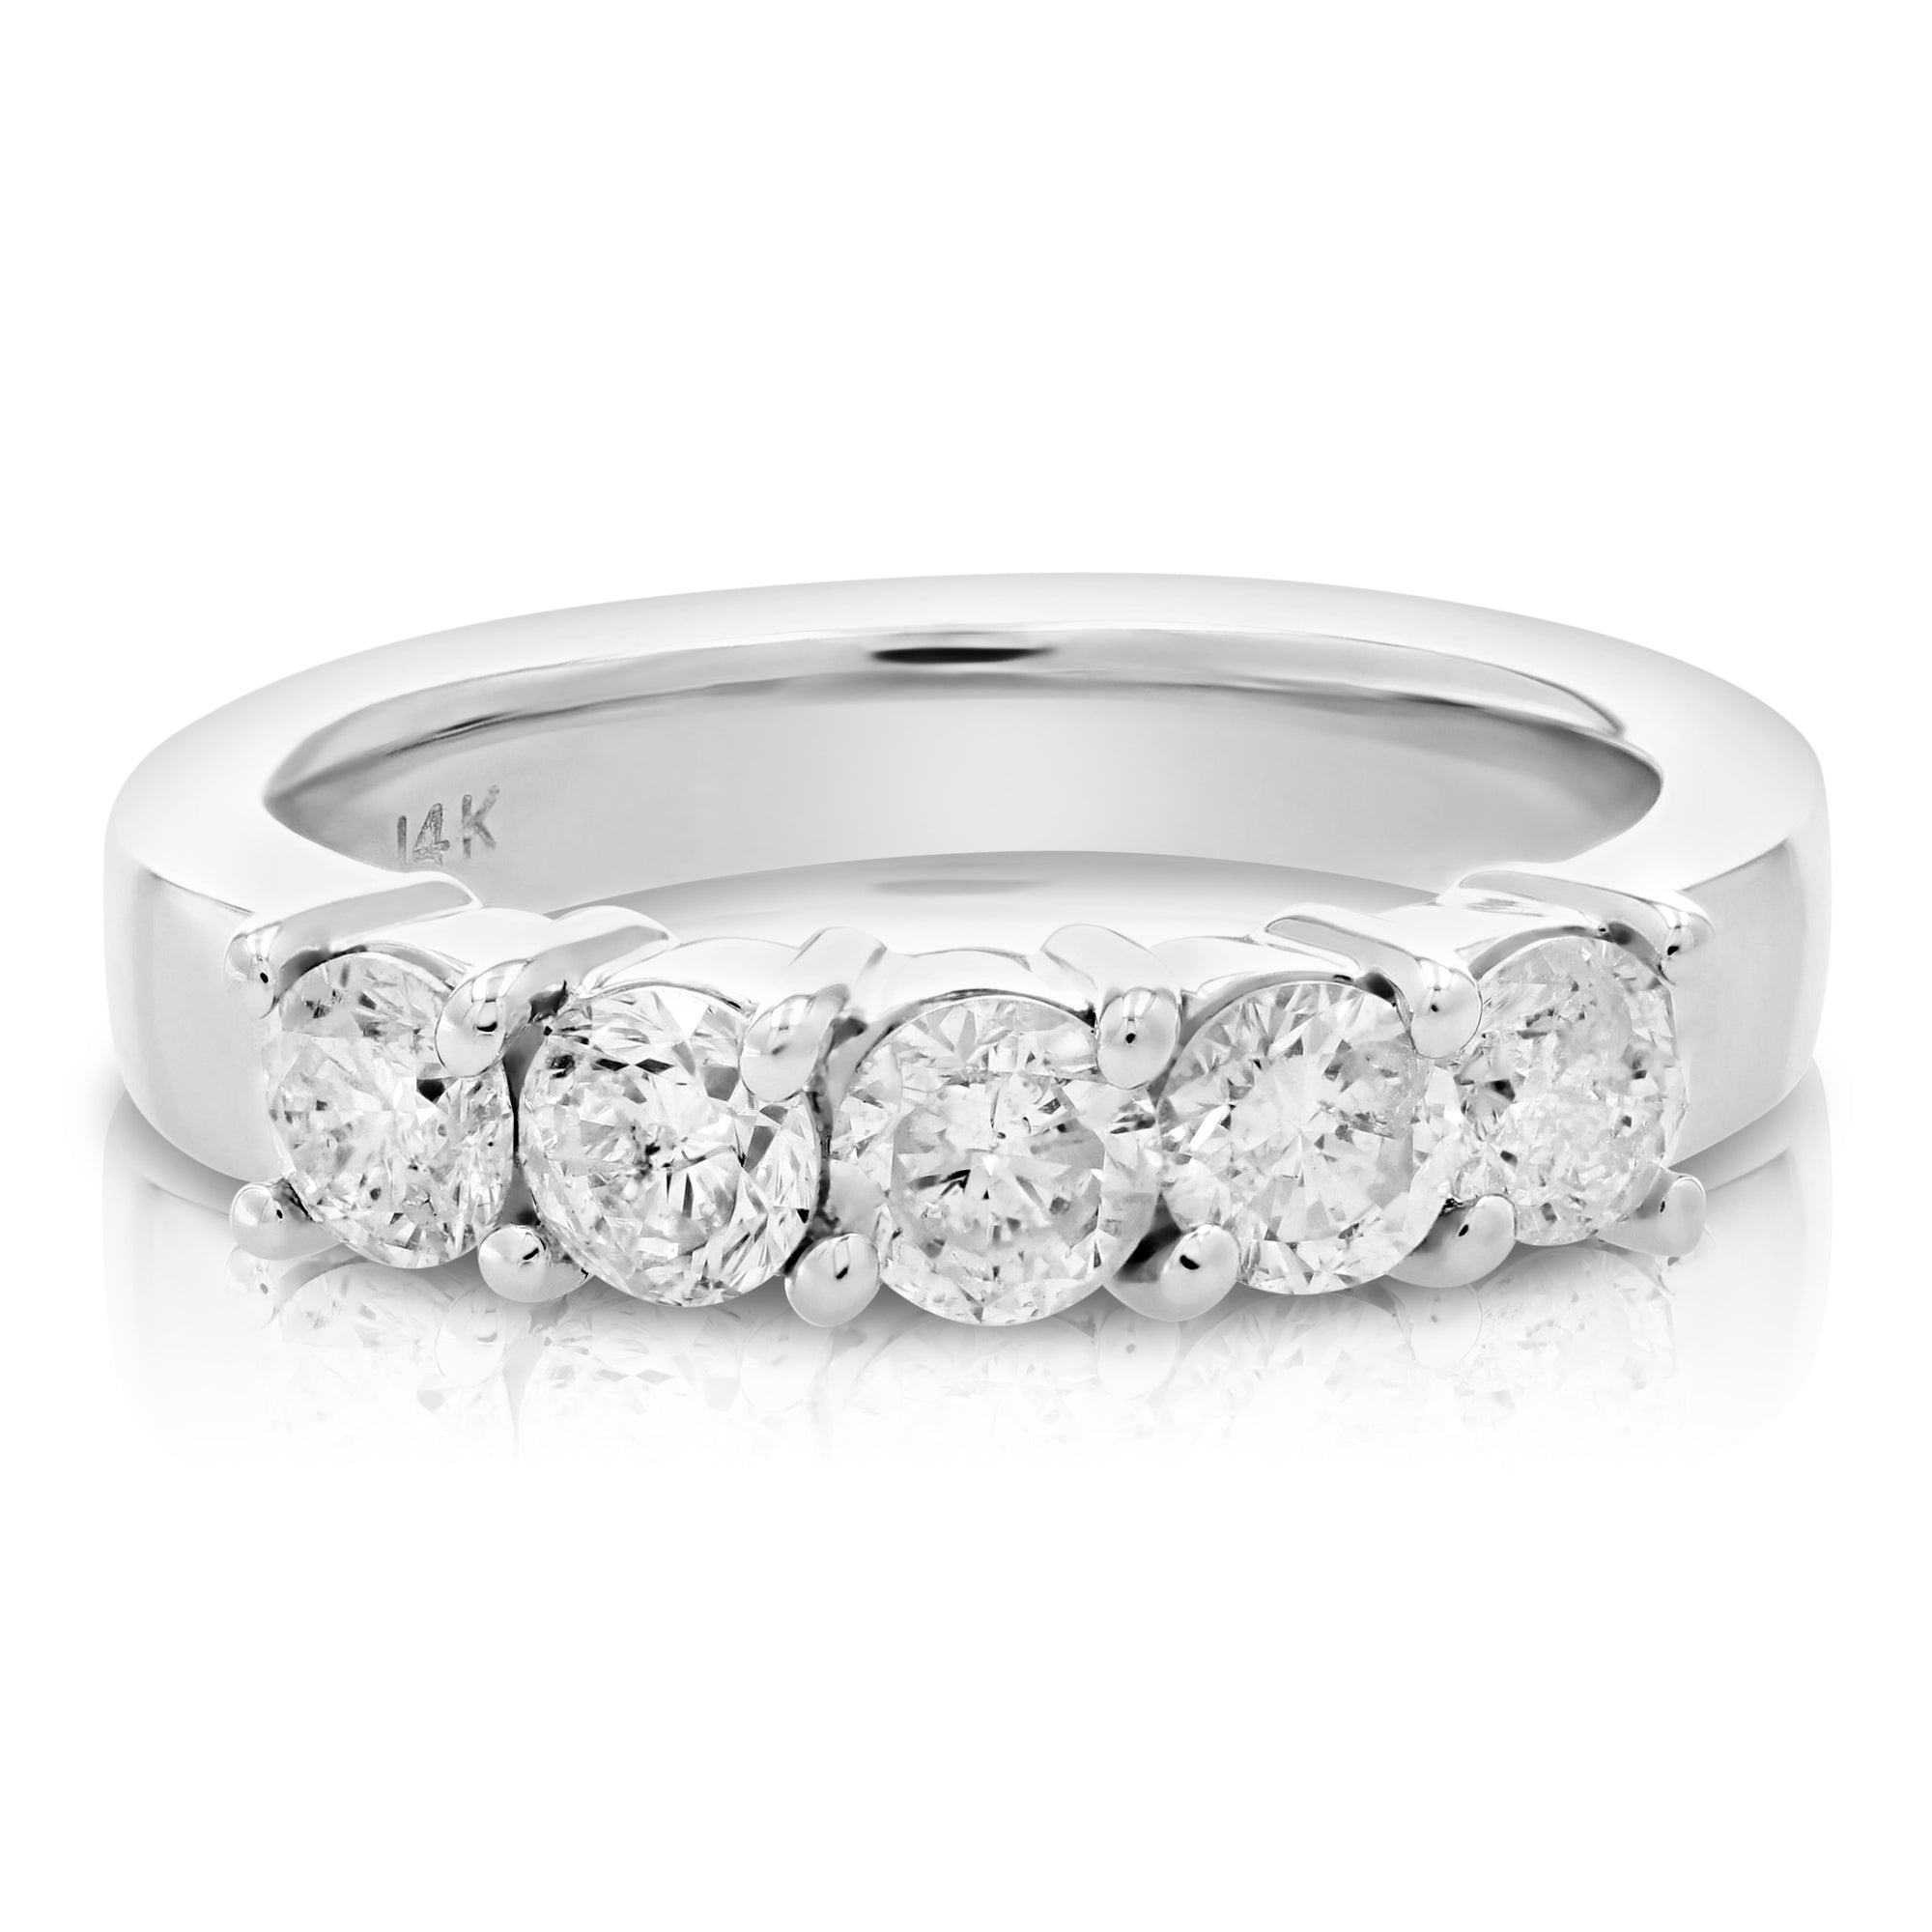 1 1/4 cttw Diamond 5 Stone Ring 14K White Gold Size 7